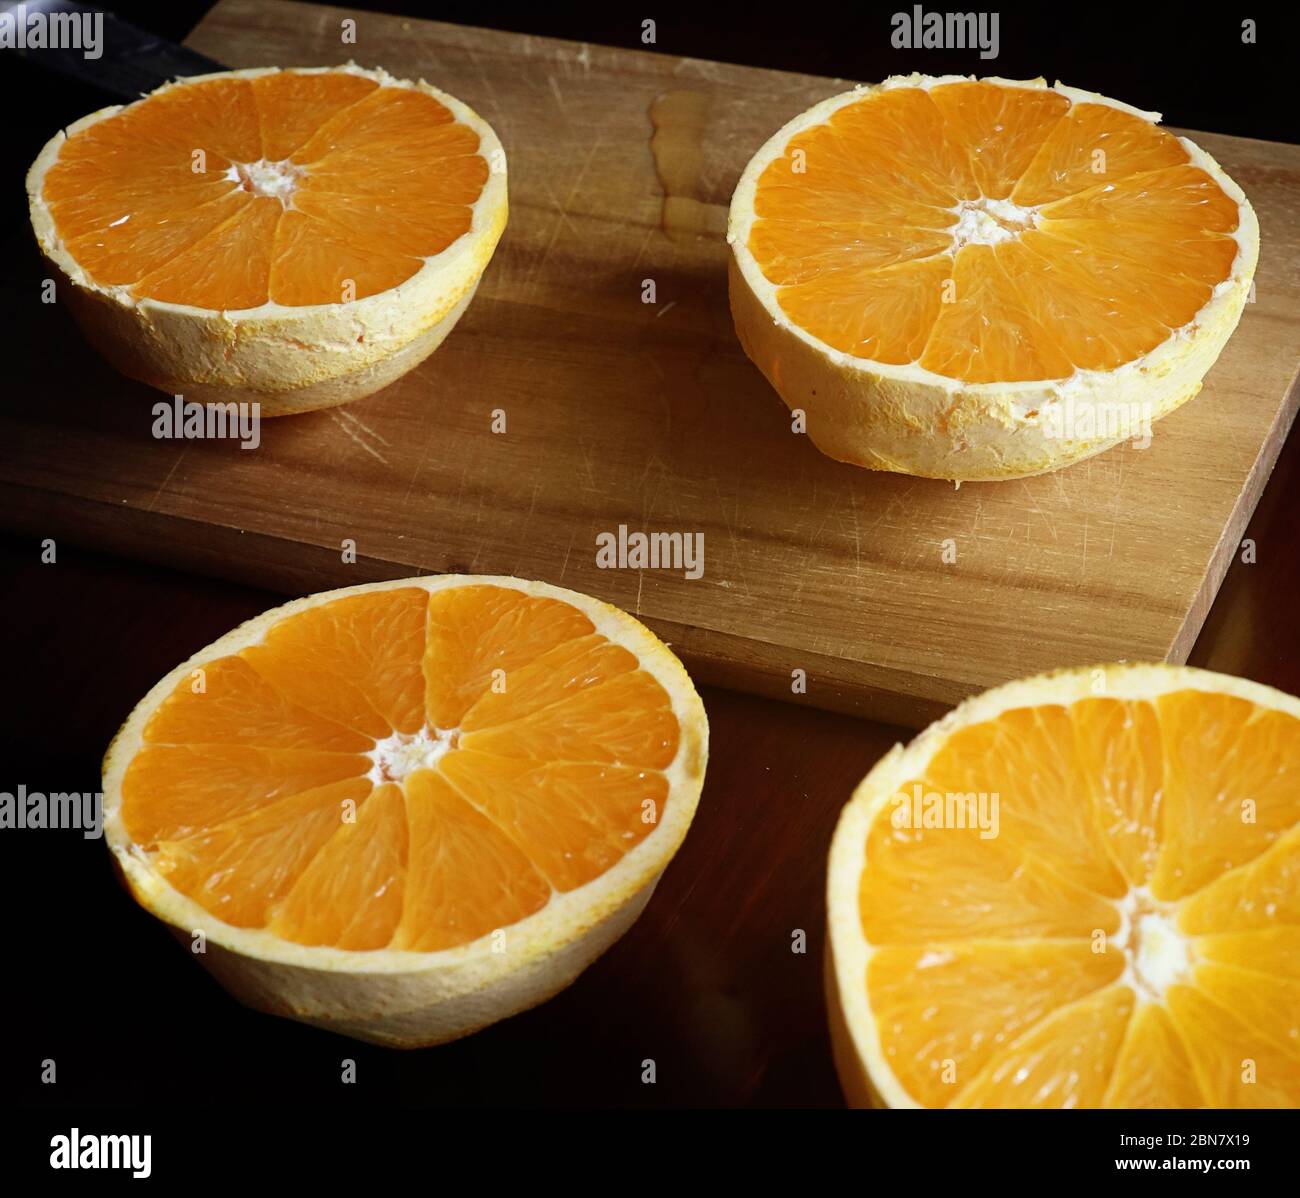 La nourriture reste en vie : demi-oranges coupées et pelées prêtes à presser pour le jus Banque D'Images